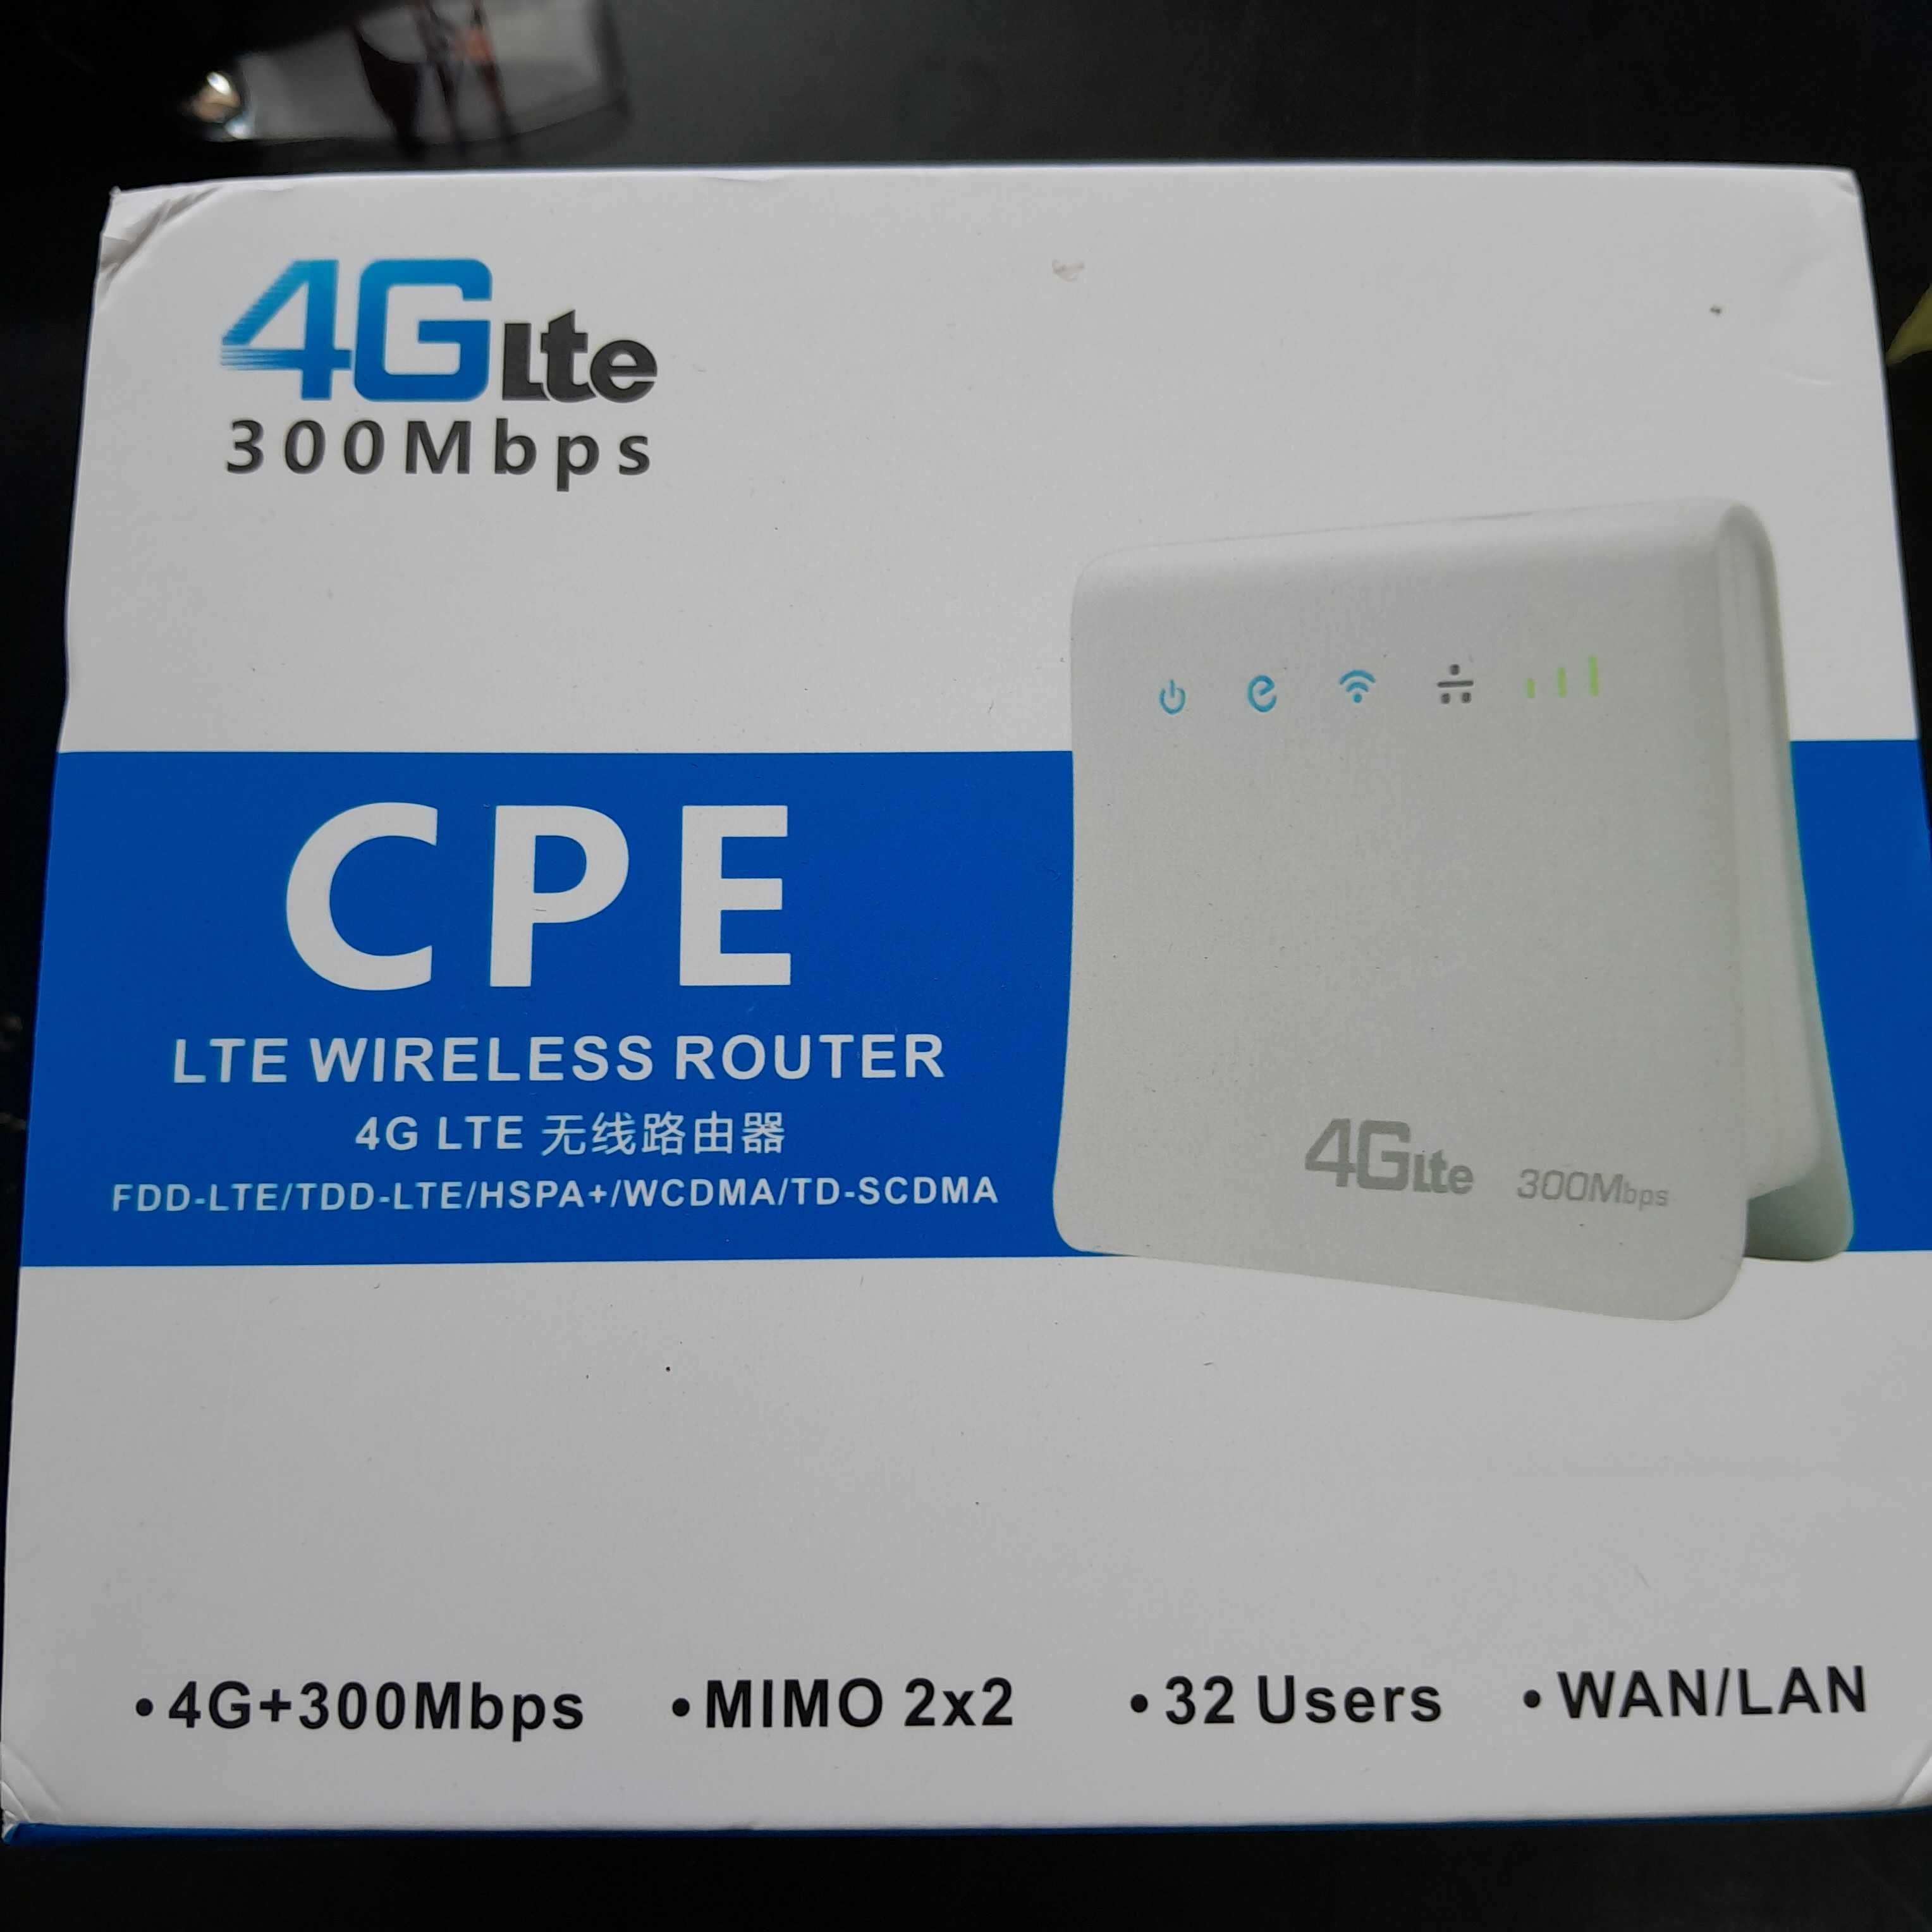 Беспроводной маршрутизатор 4G LTE CPE со скоростью 300 Мбит/с